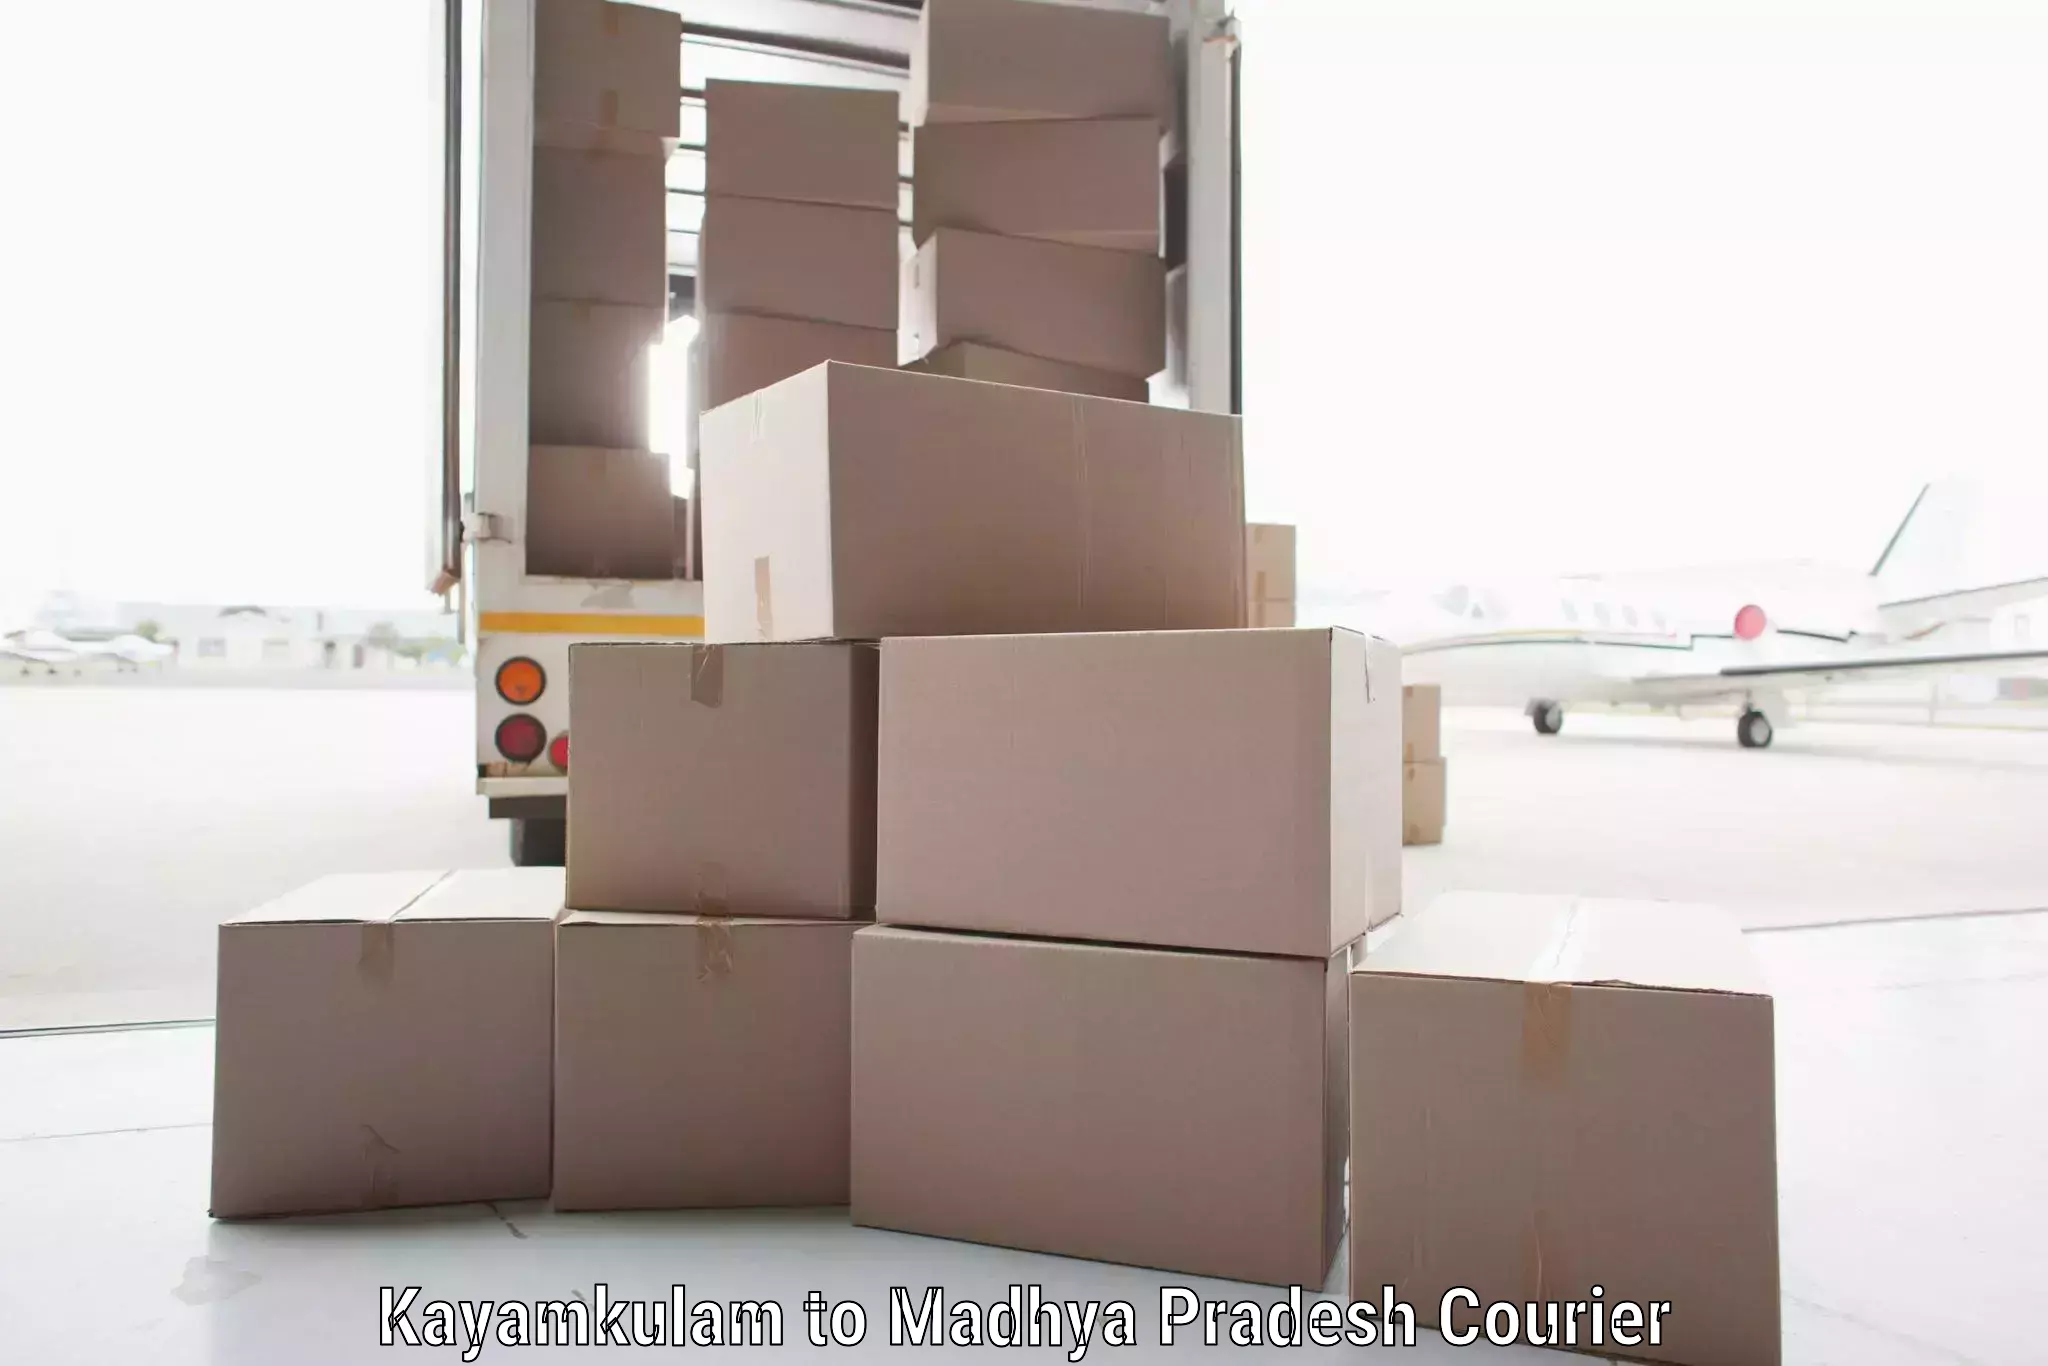 Business shipping needs Kayamkulam to Deosar